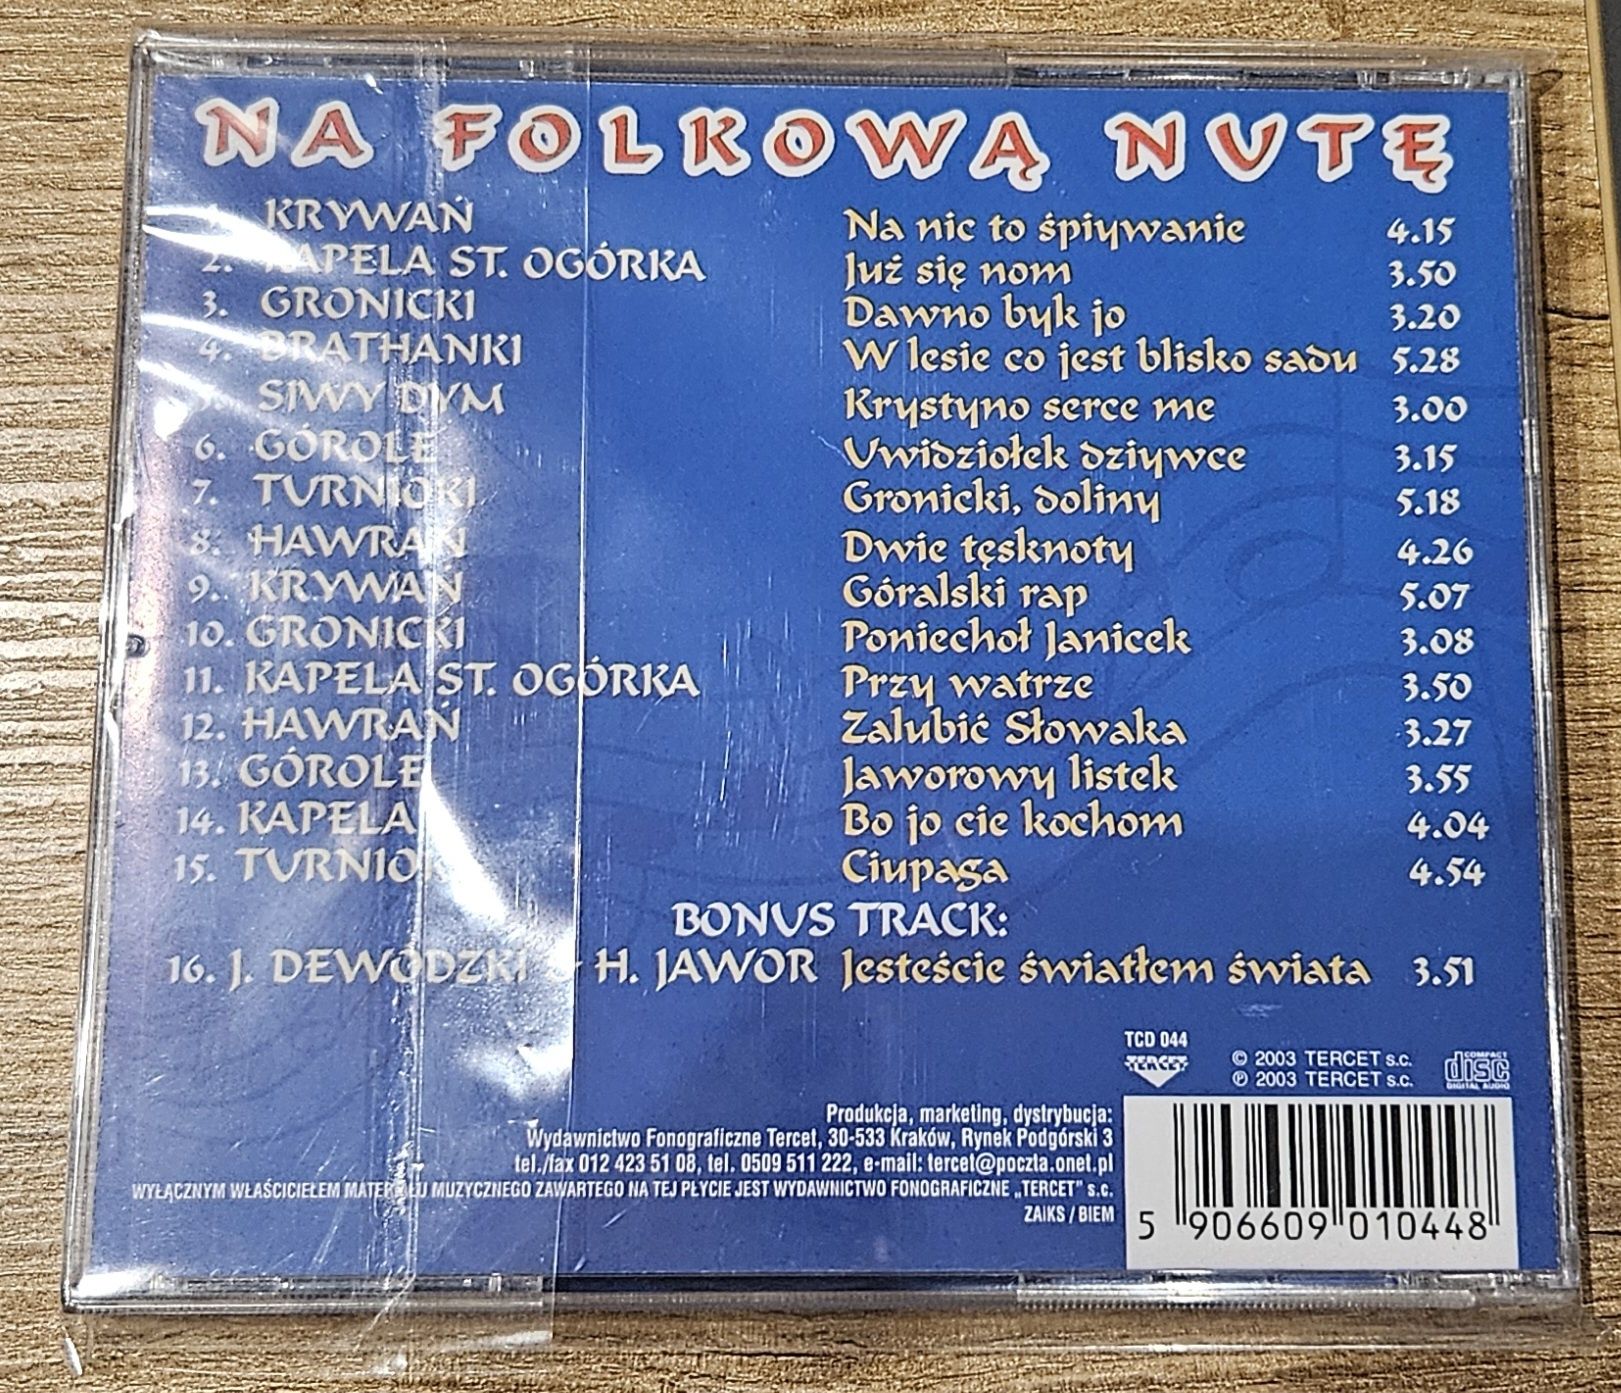 Niwa płyta CD Na folkową nutę